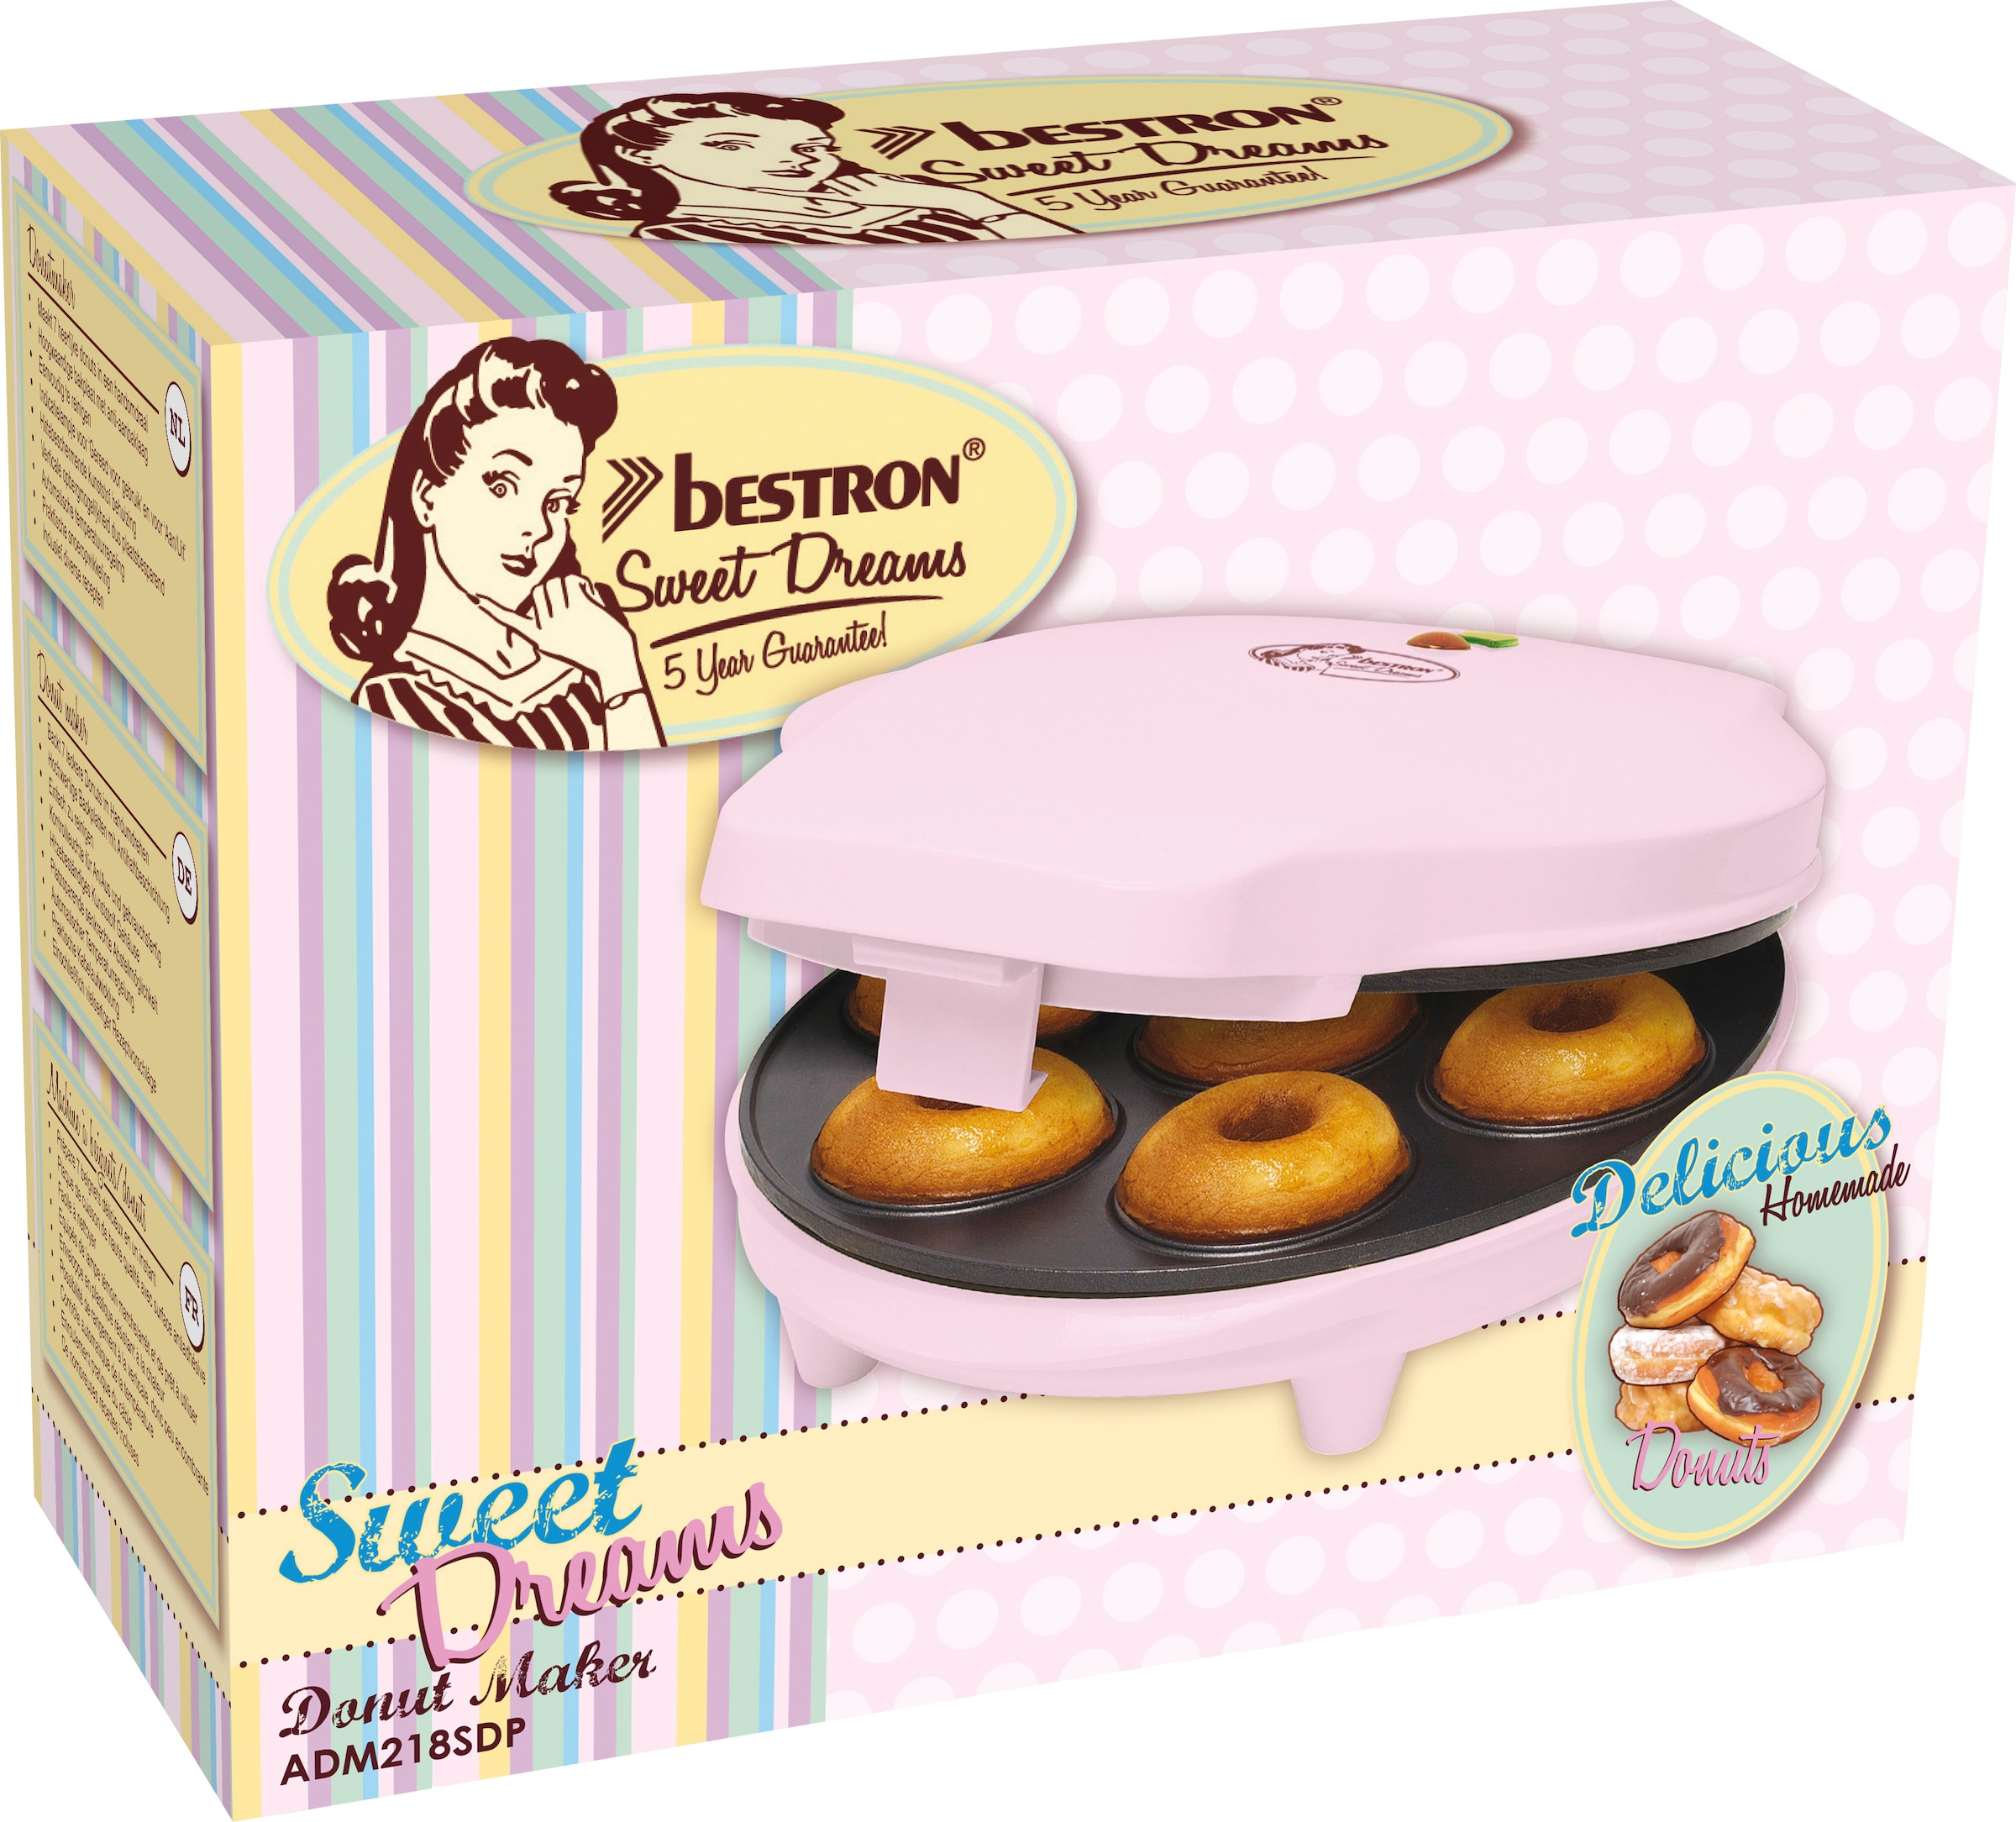 Garantie 3 Jahren bestron Waffeleisen ADM218SDP«, Sweet XXL W, »Donut-Maker mit 700 Design, Dreams, im Rosa Antihaftbeschichtung, Retro